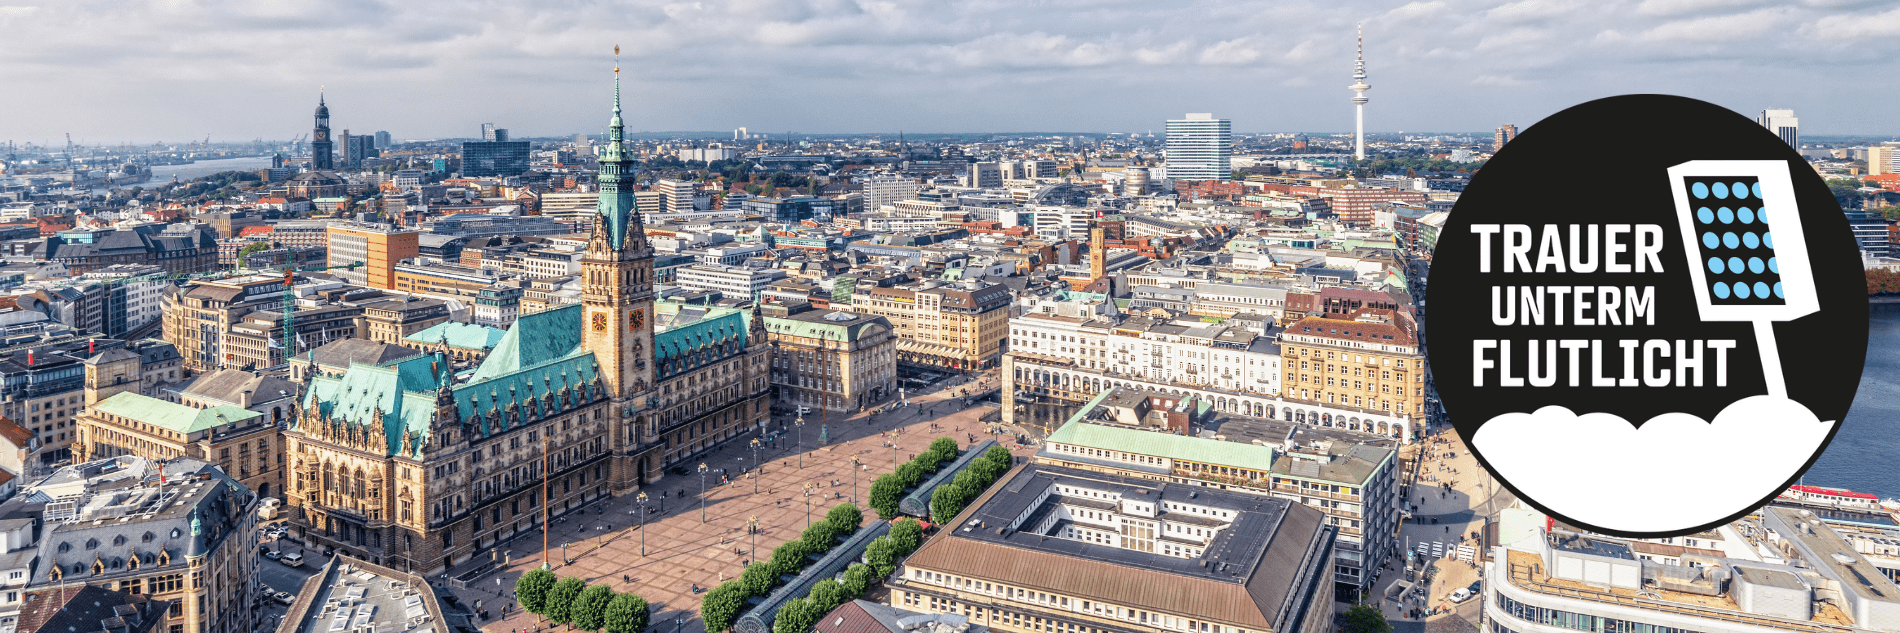 Blick aus der Vogelperspektive auf das Rathaus in Hamburg und dortige Umgebung. Darüber ein rundes Logo von Trauer unterm Flutlicht zeigt einen weißen Schriftzug mit „Trauer unterm Flutlicht“-Schriftzug.